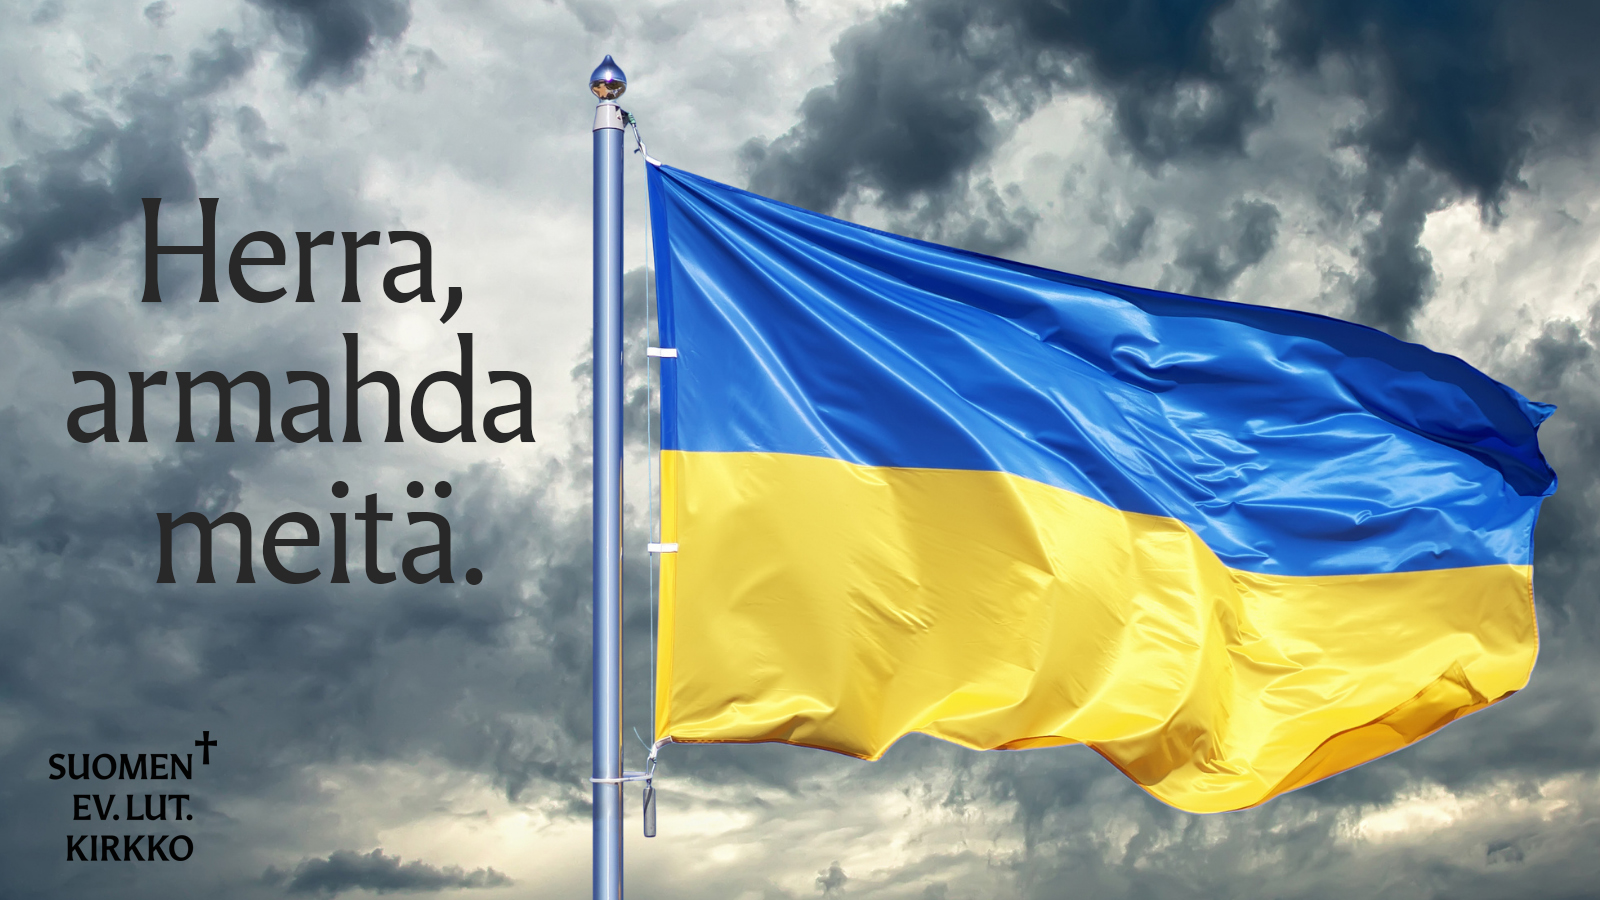 Herra armahda meitä, taustalla liehuu Ukrainan lippu.